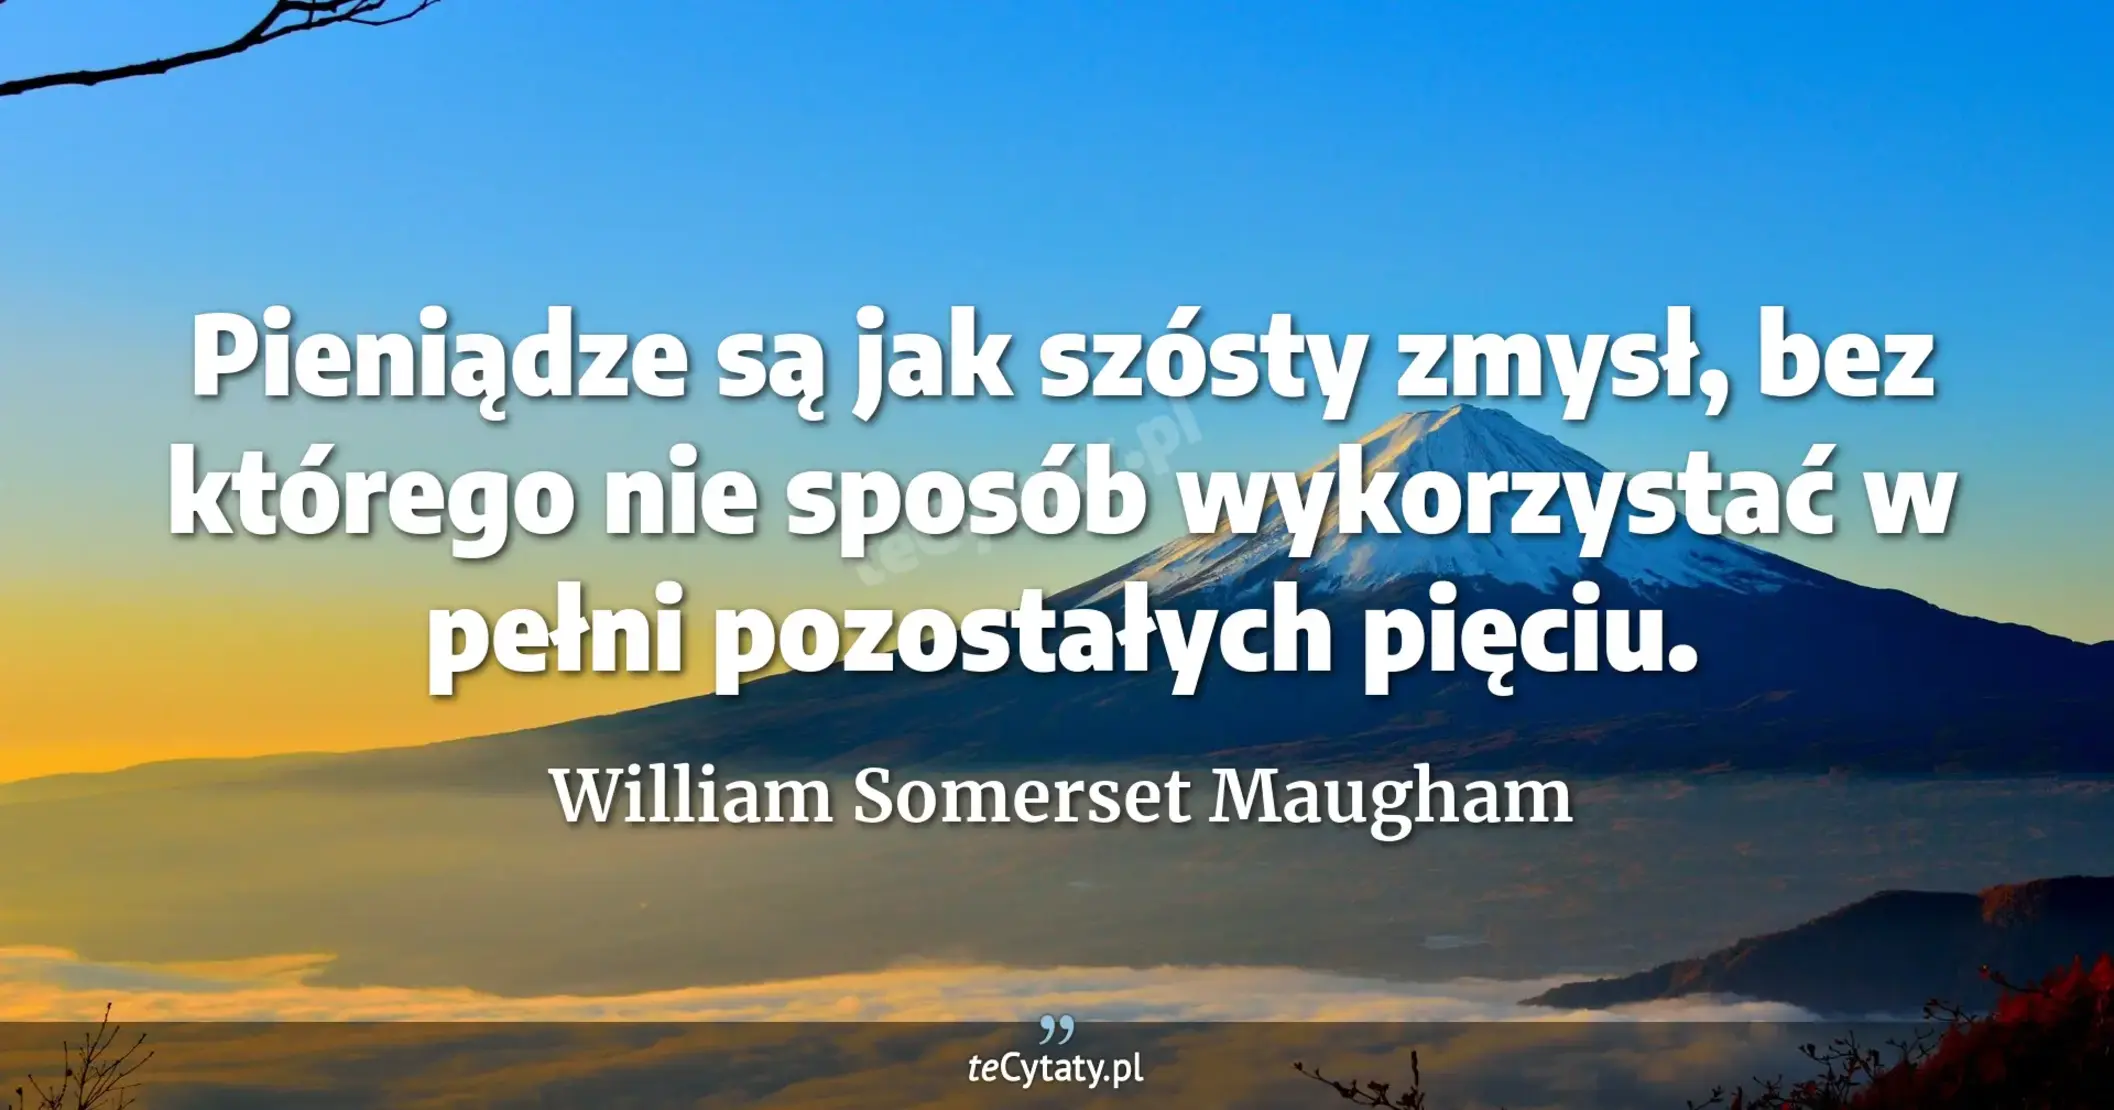 Pieniądze są jak szósty zmysł, bez którego nie sposób wykorzystać w pełni pozostałych pięciu. - William Somerset Maugham